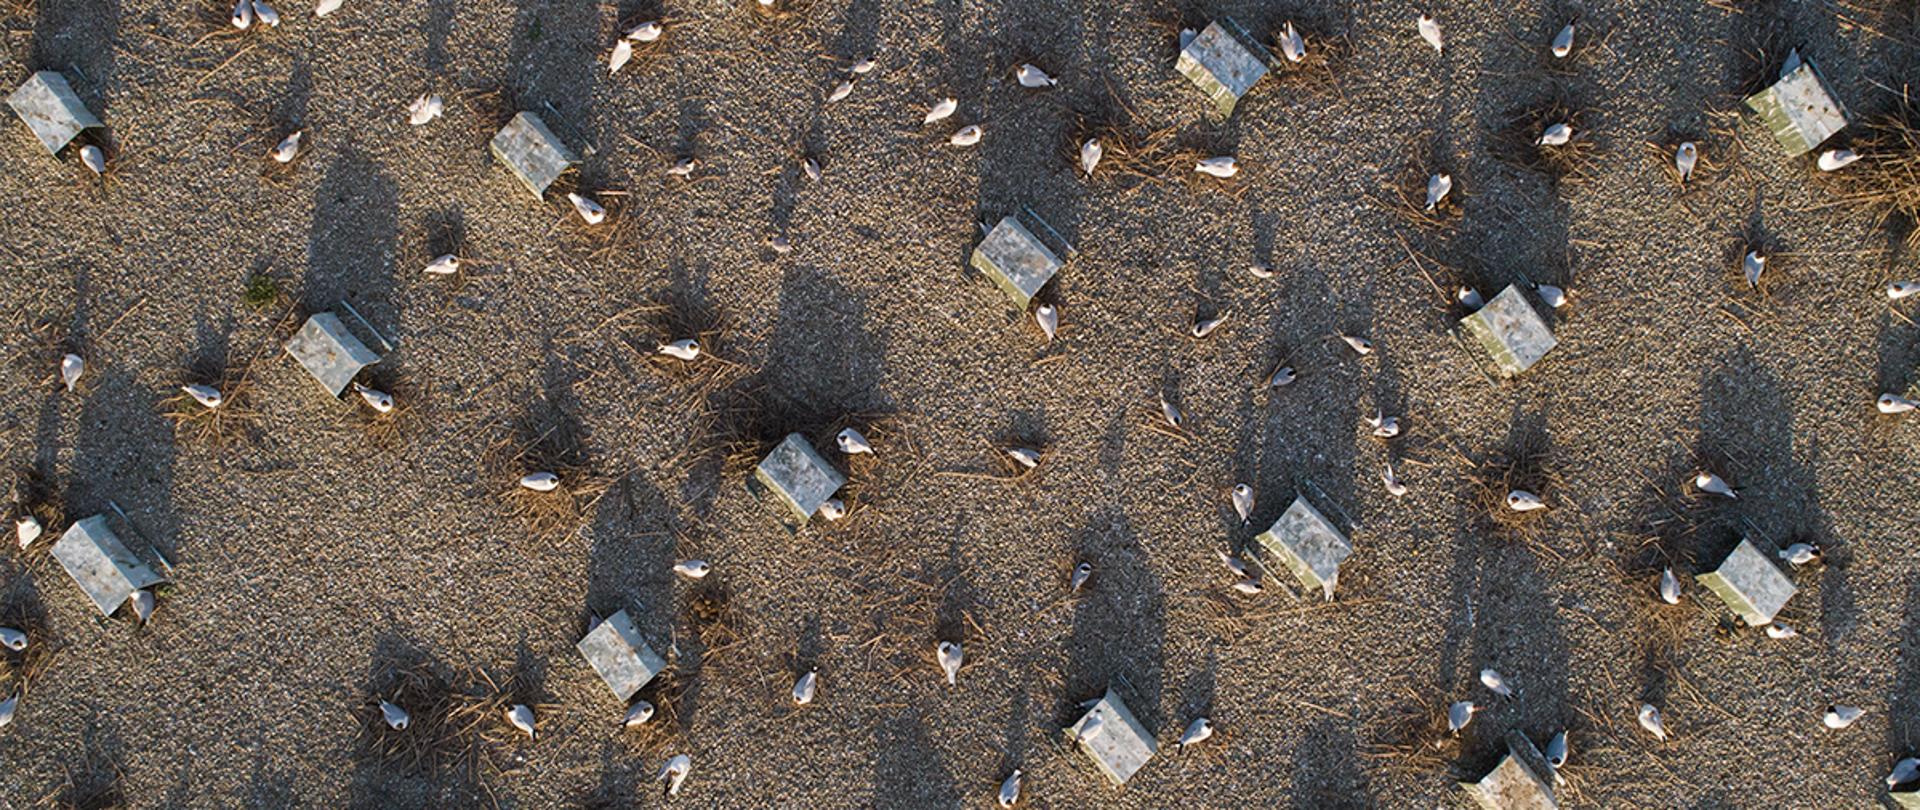 Zdjęcie wyspy wykonane z drona, od góry. Na zdjęciu widać żwirową powierzchnię wyspy z metalowymi daszkami, pod którymi ptaki mogą się skryć w czasie deszczu palącego słońca. 